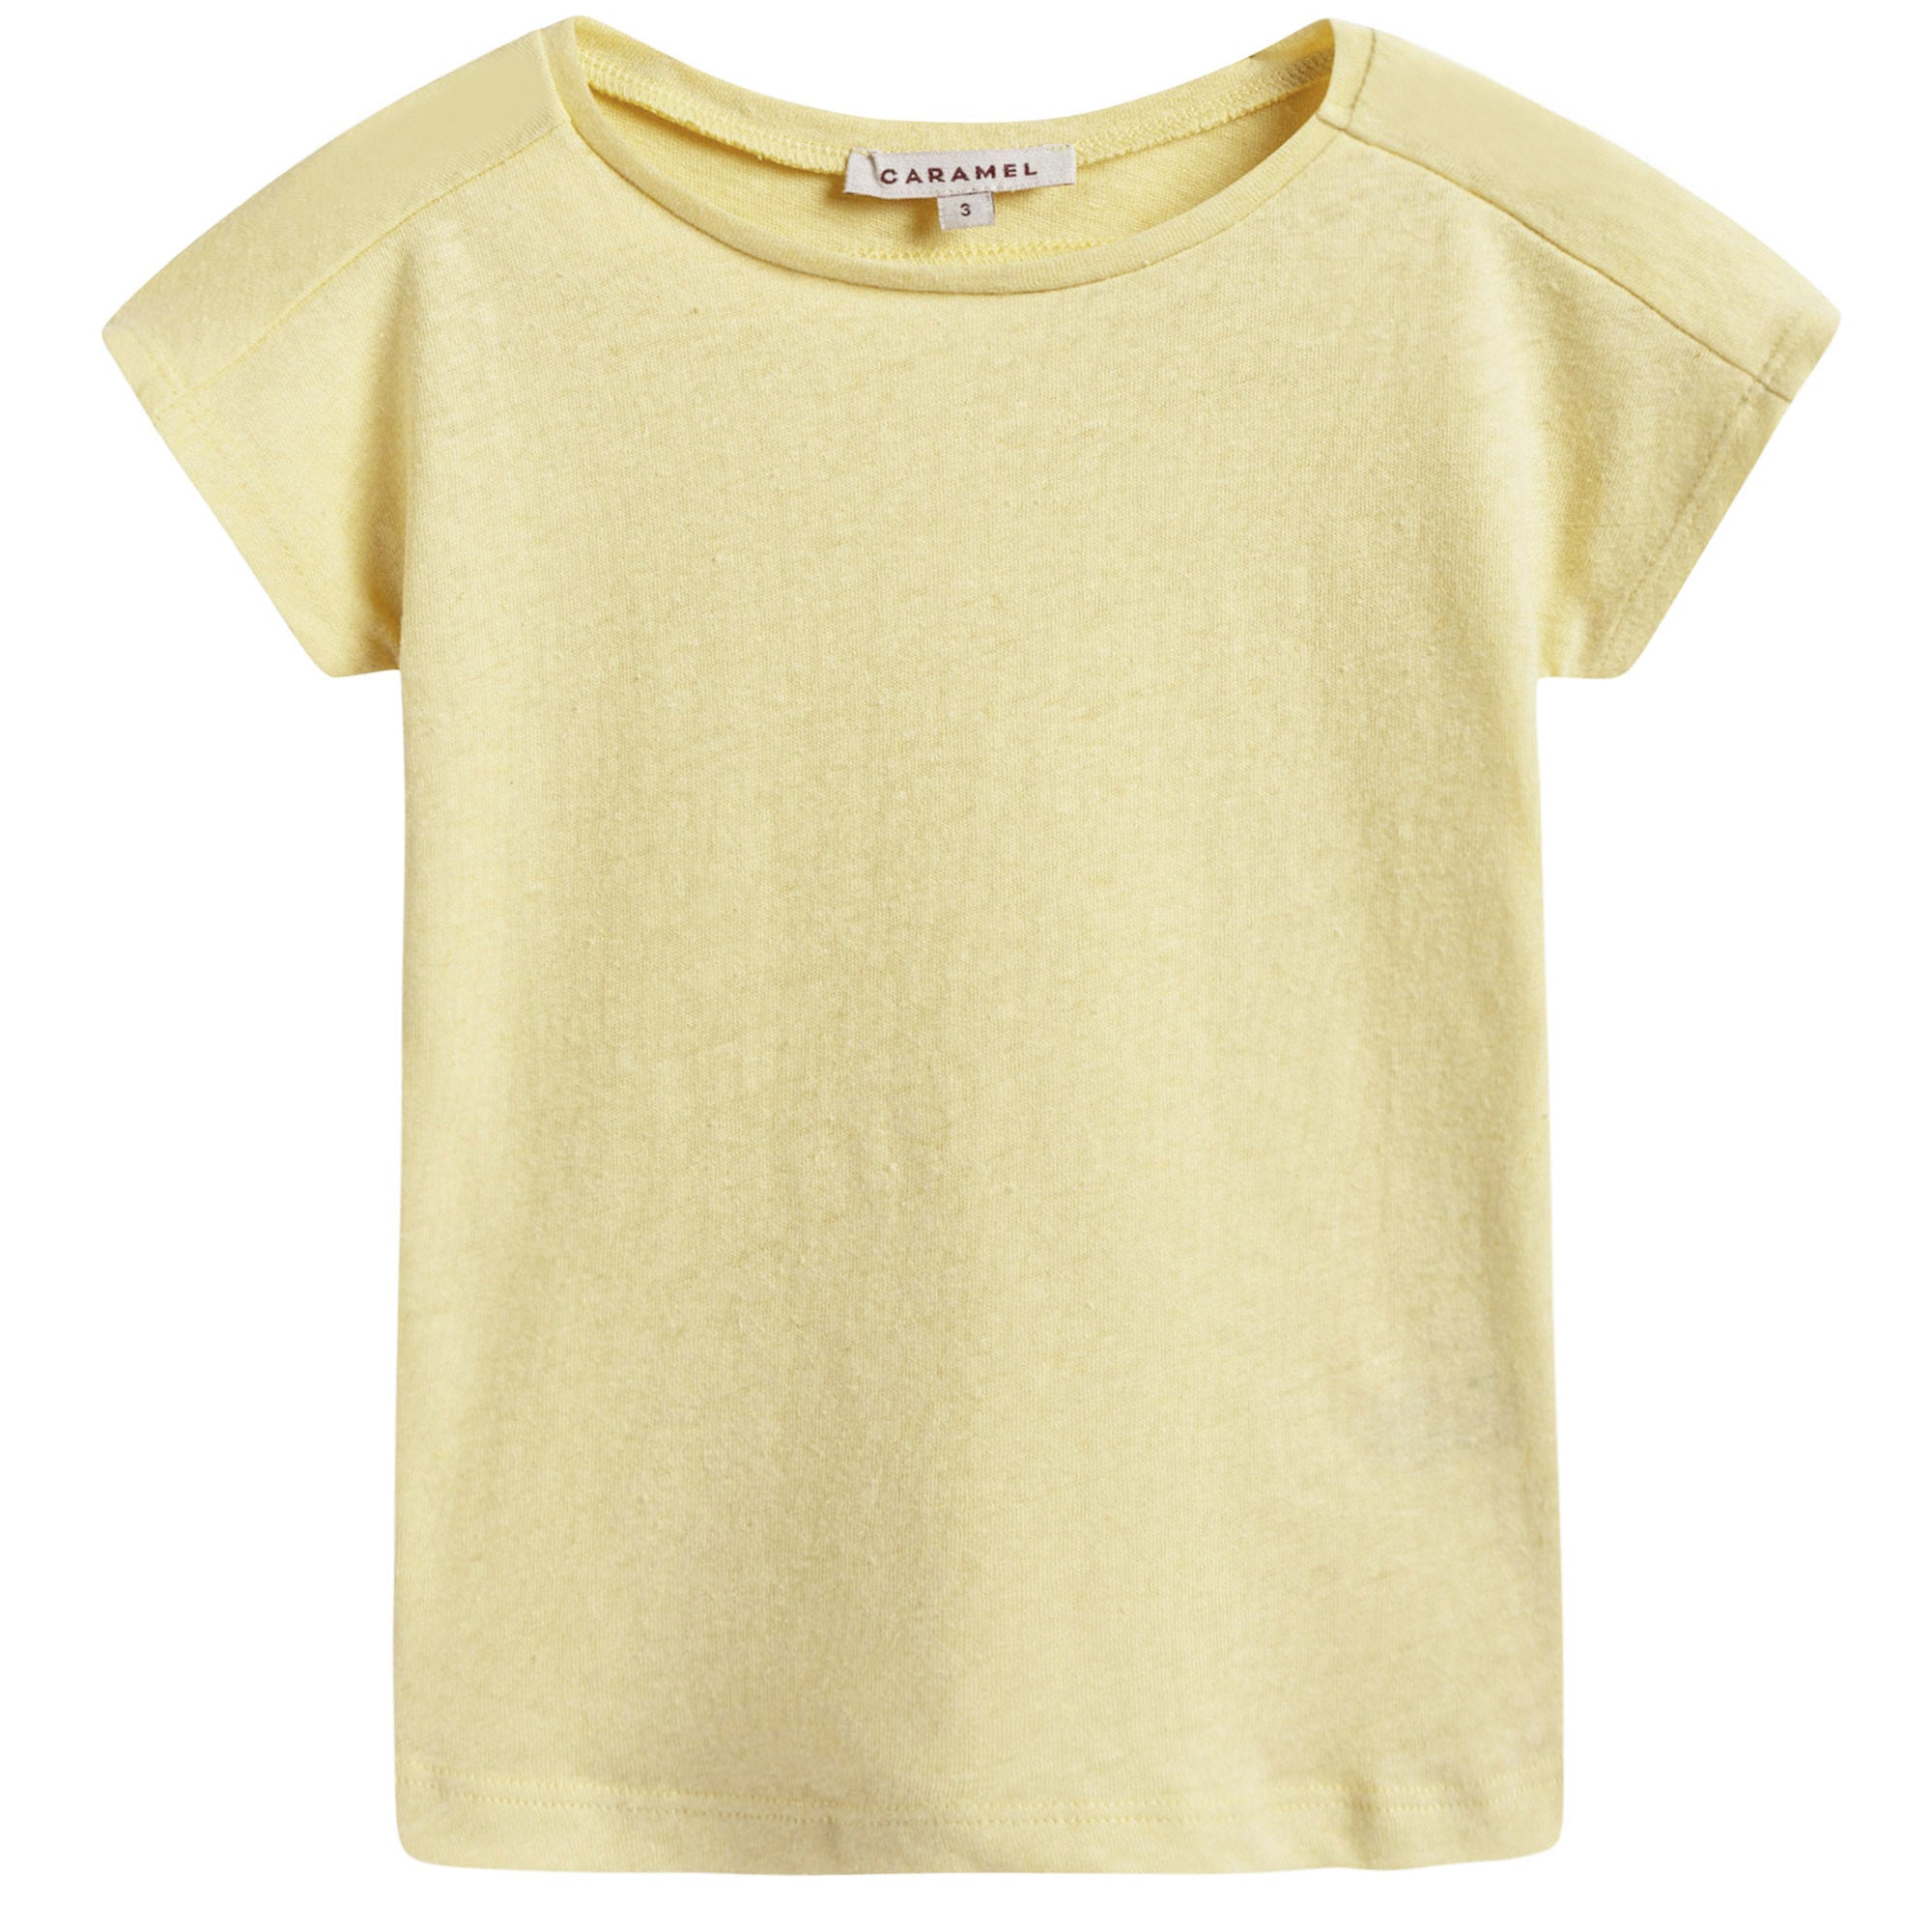 Boys & Girls Light Yellow Jersey T-shirt